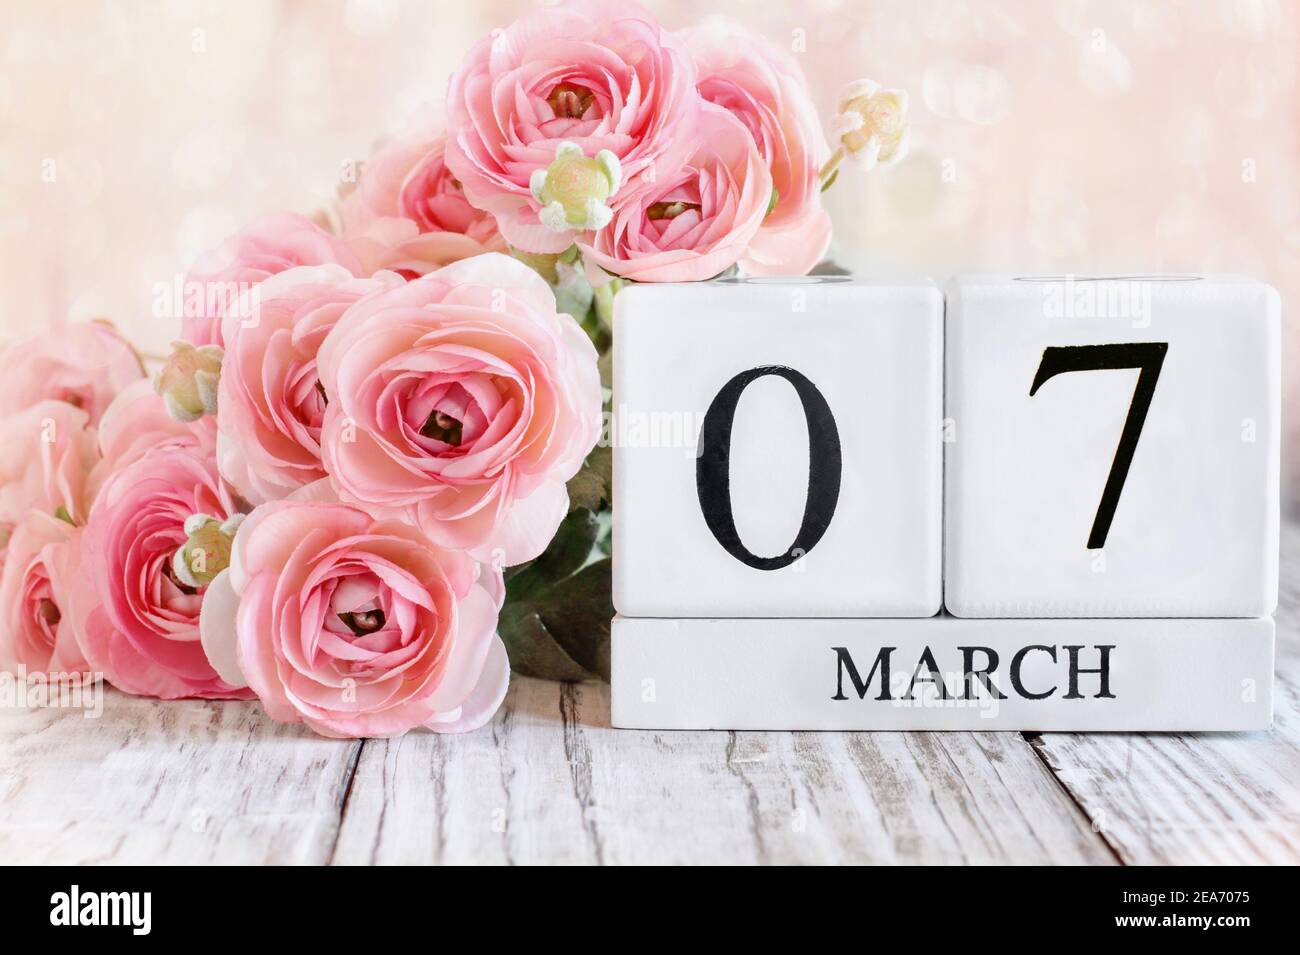 Weiße Holz-Kalenderblöcke mit dem Datum März 7th und rosa Ranunculus Blumen über einem Holztisch. Selektiver Fokus mit unscharfem Hintergrund. Stockfoto